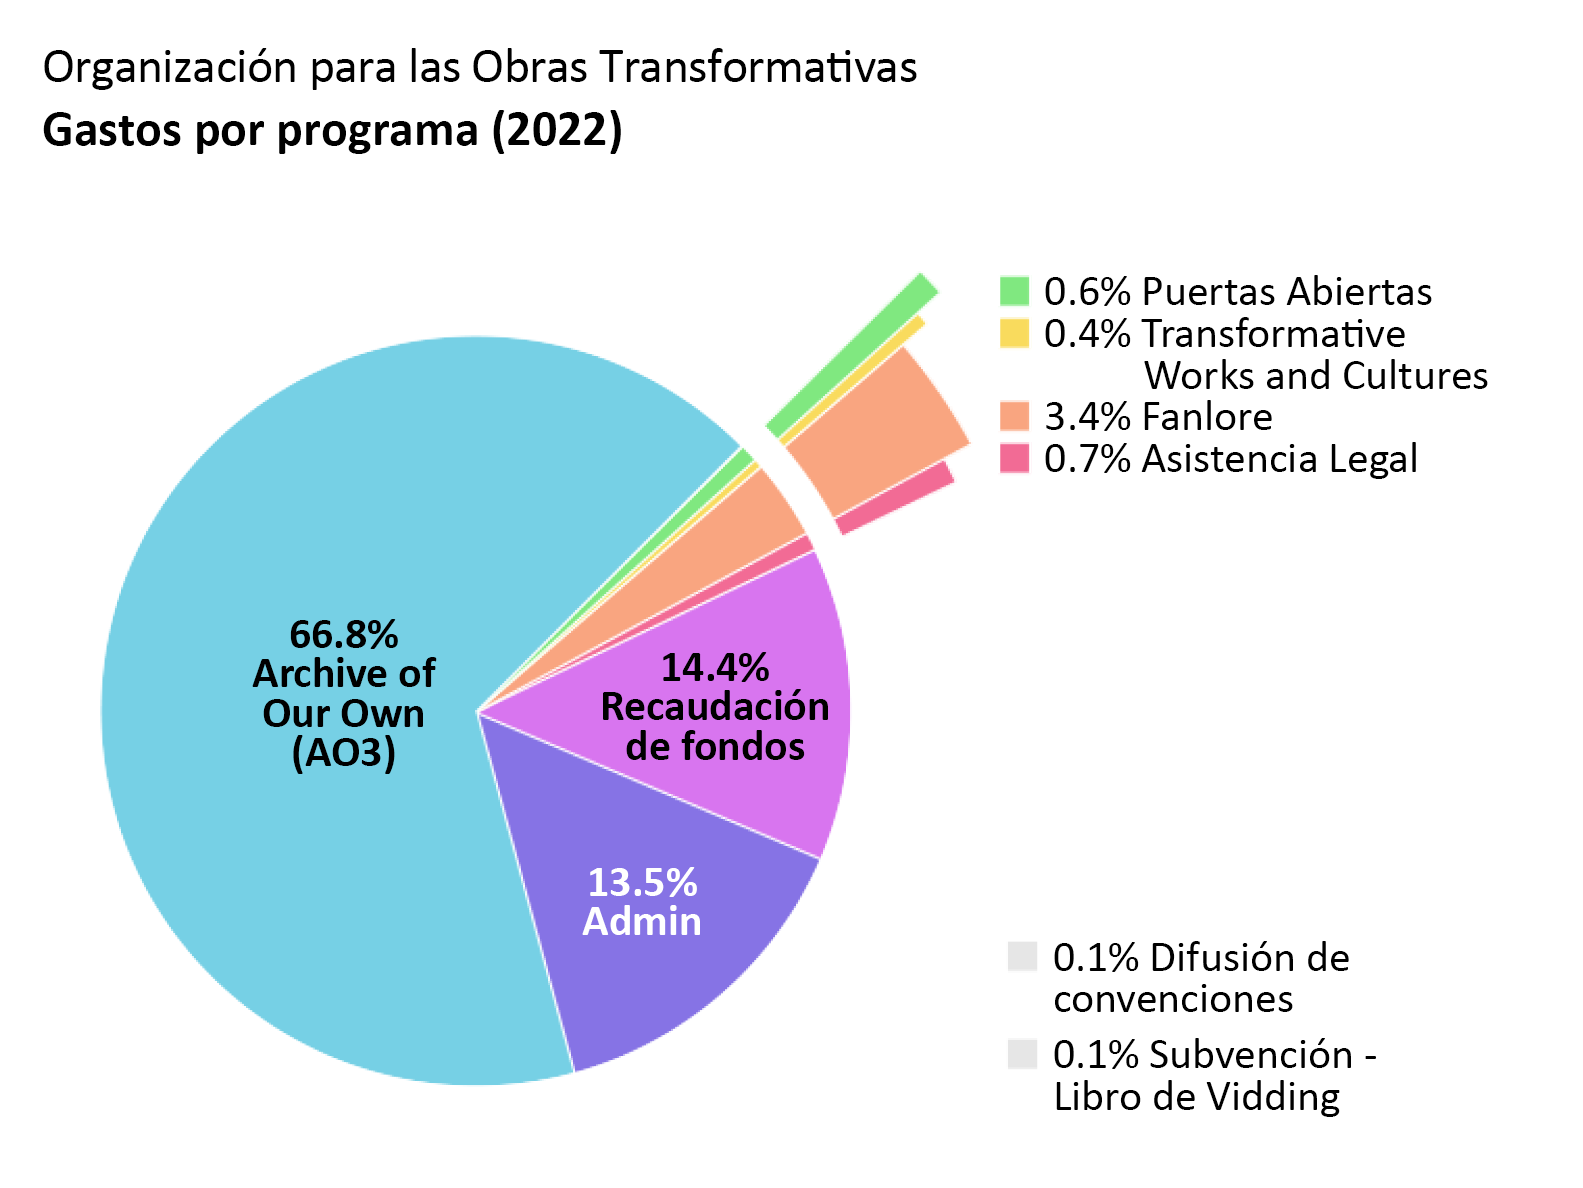 Gastos por programa: Archive of Our Own: 66,8%. Puertas Abiertas: 0,6%. Transformative Works and Cultures: 0,4%. Fanlore: 3,4%. Asistencia Legal: 0,7%. Difusión de Convenciones: 0,1%. Subvención - Libro de Vidding: 0,1%. Admin: 13,5%. Recaudación de Fondos: 14,4%.